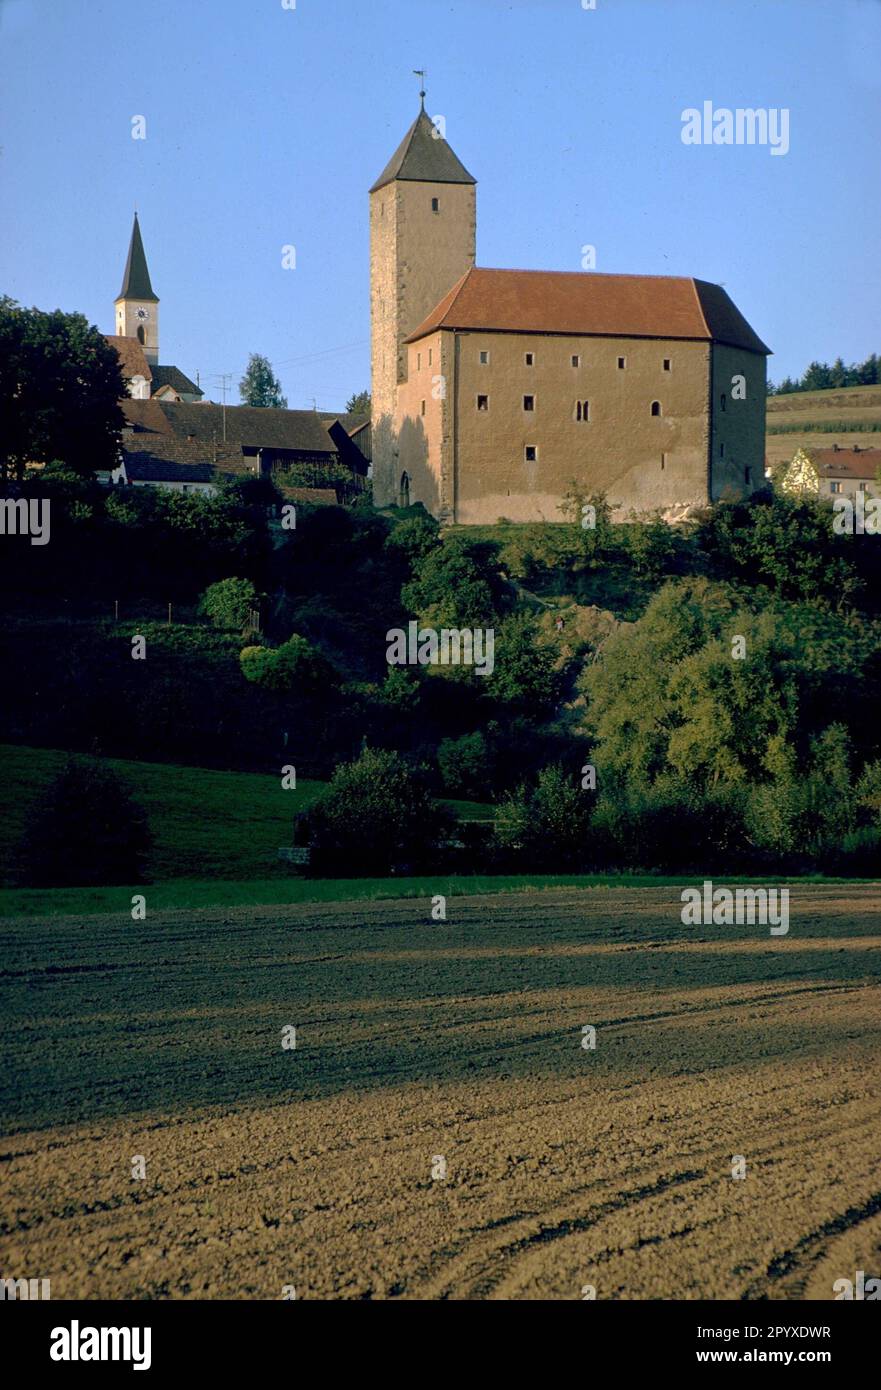 Auf dem Schloss Trausnitz in Tal hielt Ludwig der Bayerische Friedrich der Messe von Österreich für 28 Monate gefangen, nachdem er seine letzte große Schlacht bei Ampfing verlor. (Foto ohne Datum) Stockfoto